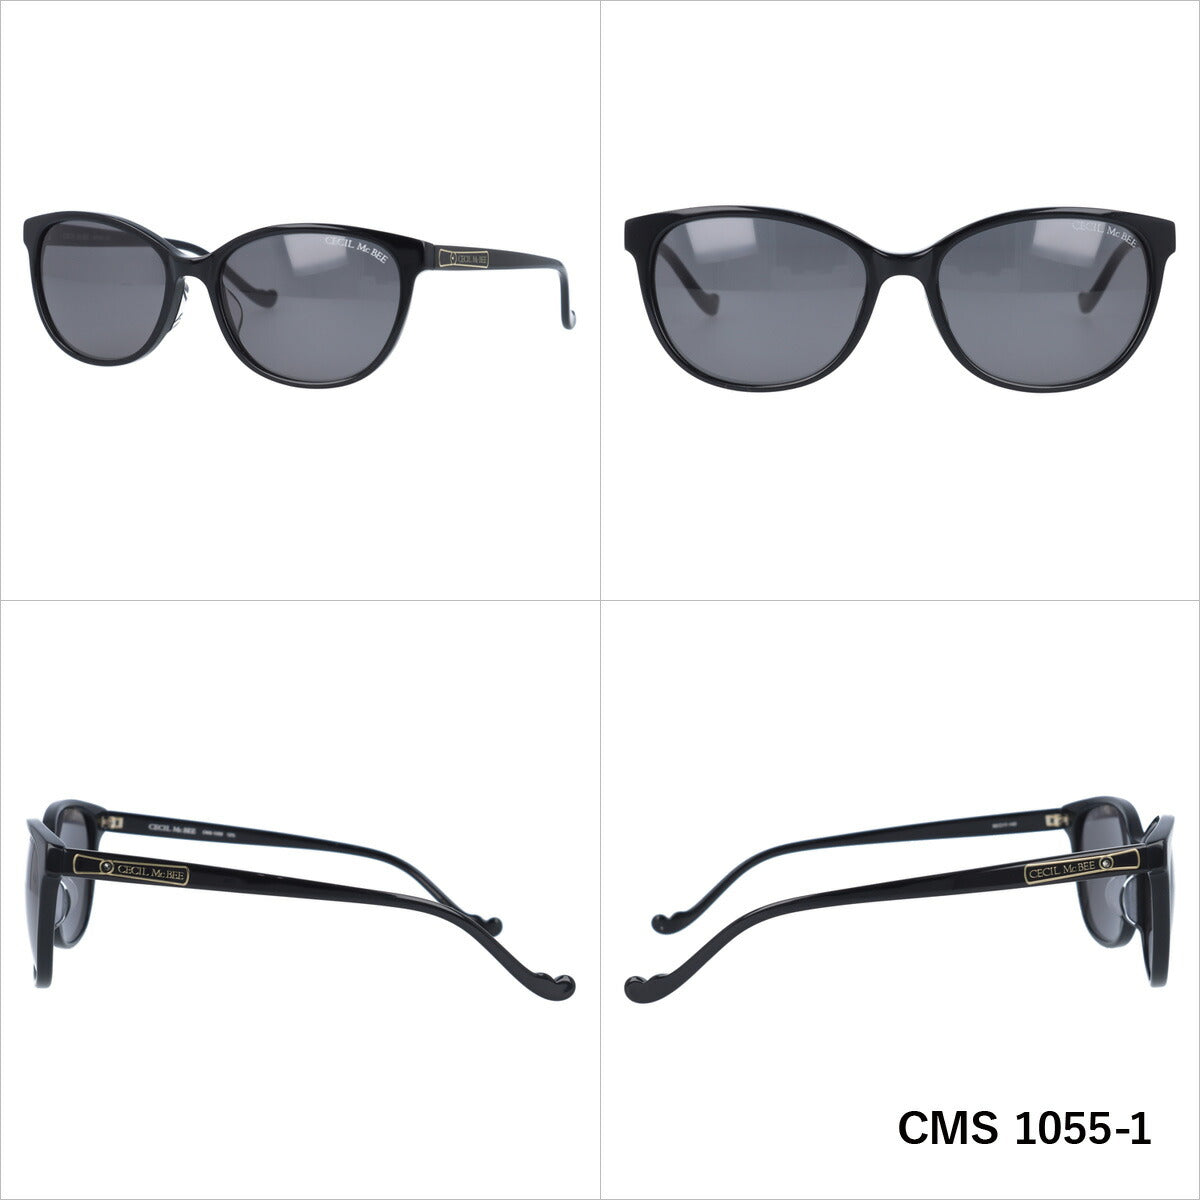 レディース サングラス CECIL McBEE セシルマクビー CMS 1055 全3色 55サイズ アジアンフィット ウェリントン型 女性 UVカット 紫外線 対策 ブランド 眼鏡 メガネ アイウェア 人気 おすすめ ラッピング無料